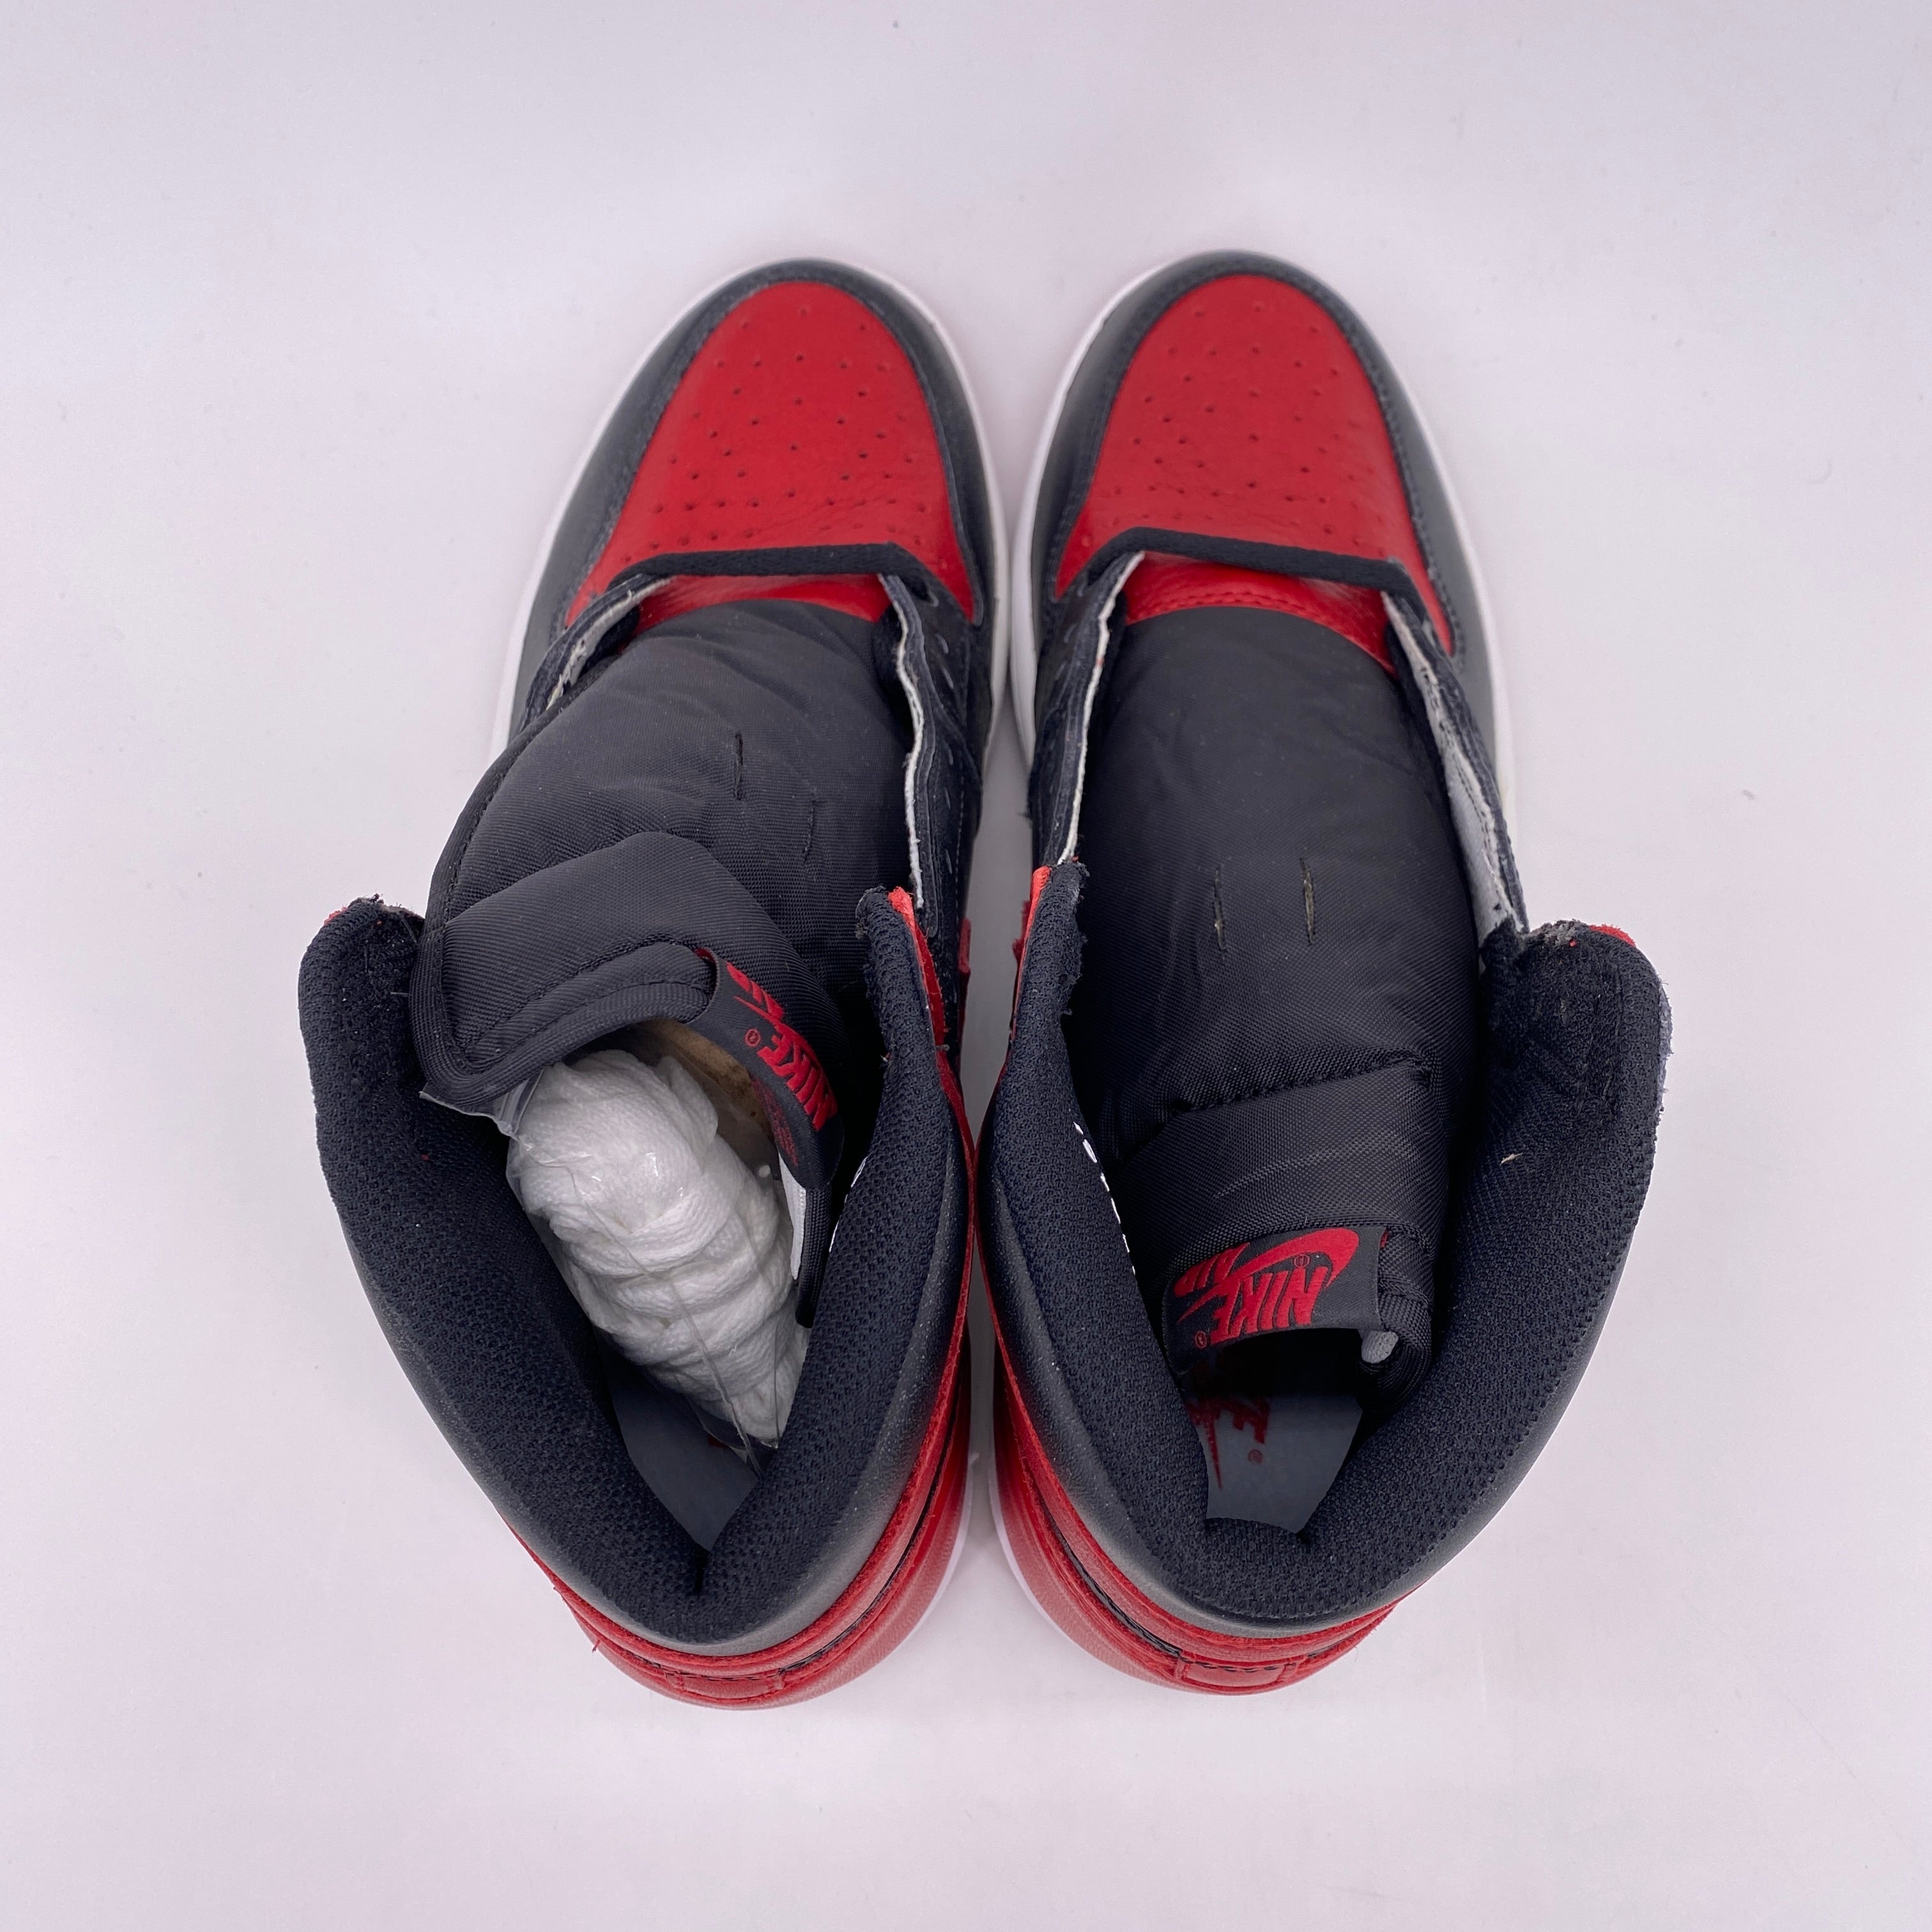 Air Jordan 1 Retro High OG "Banned" 2016 New Size 10.5